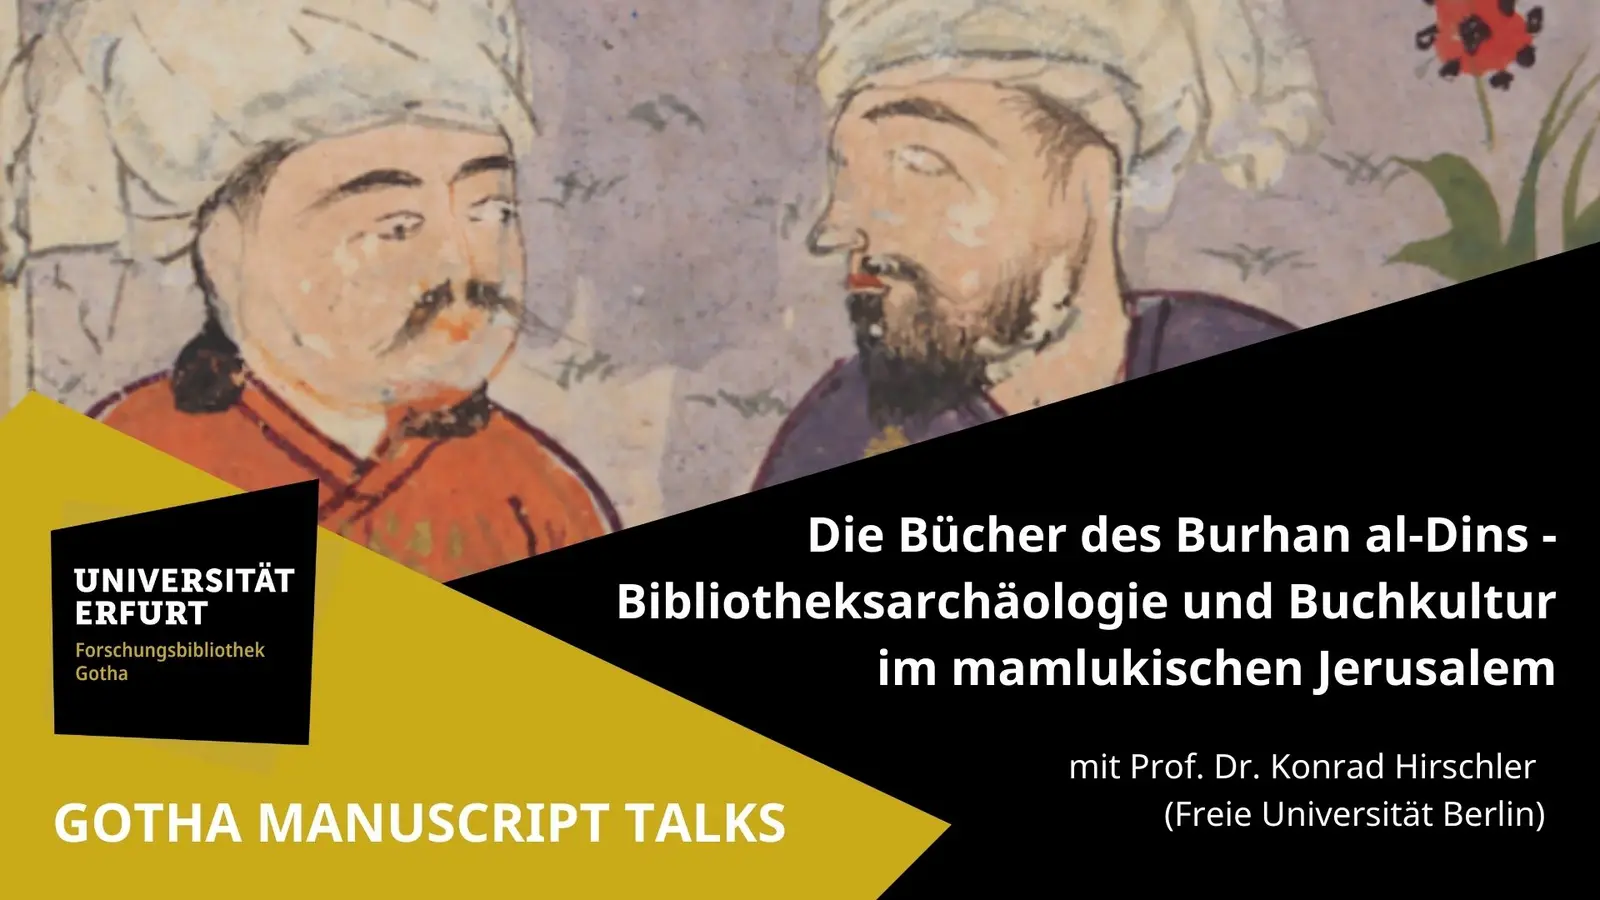 Vorschaubild zu Gotha Manuscript Talks 01: Bücher des Burhan Al Dins mit Prof. Dr. Konrad Hirschler